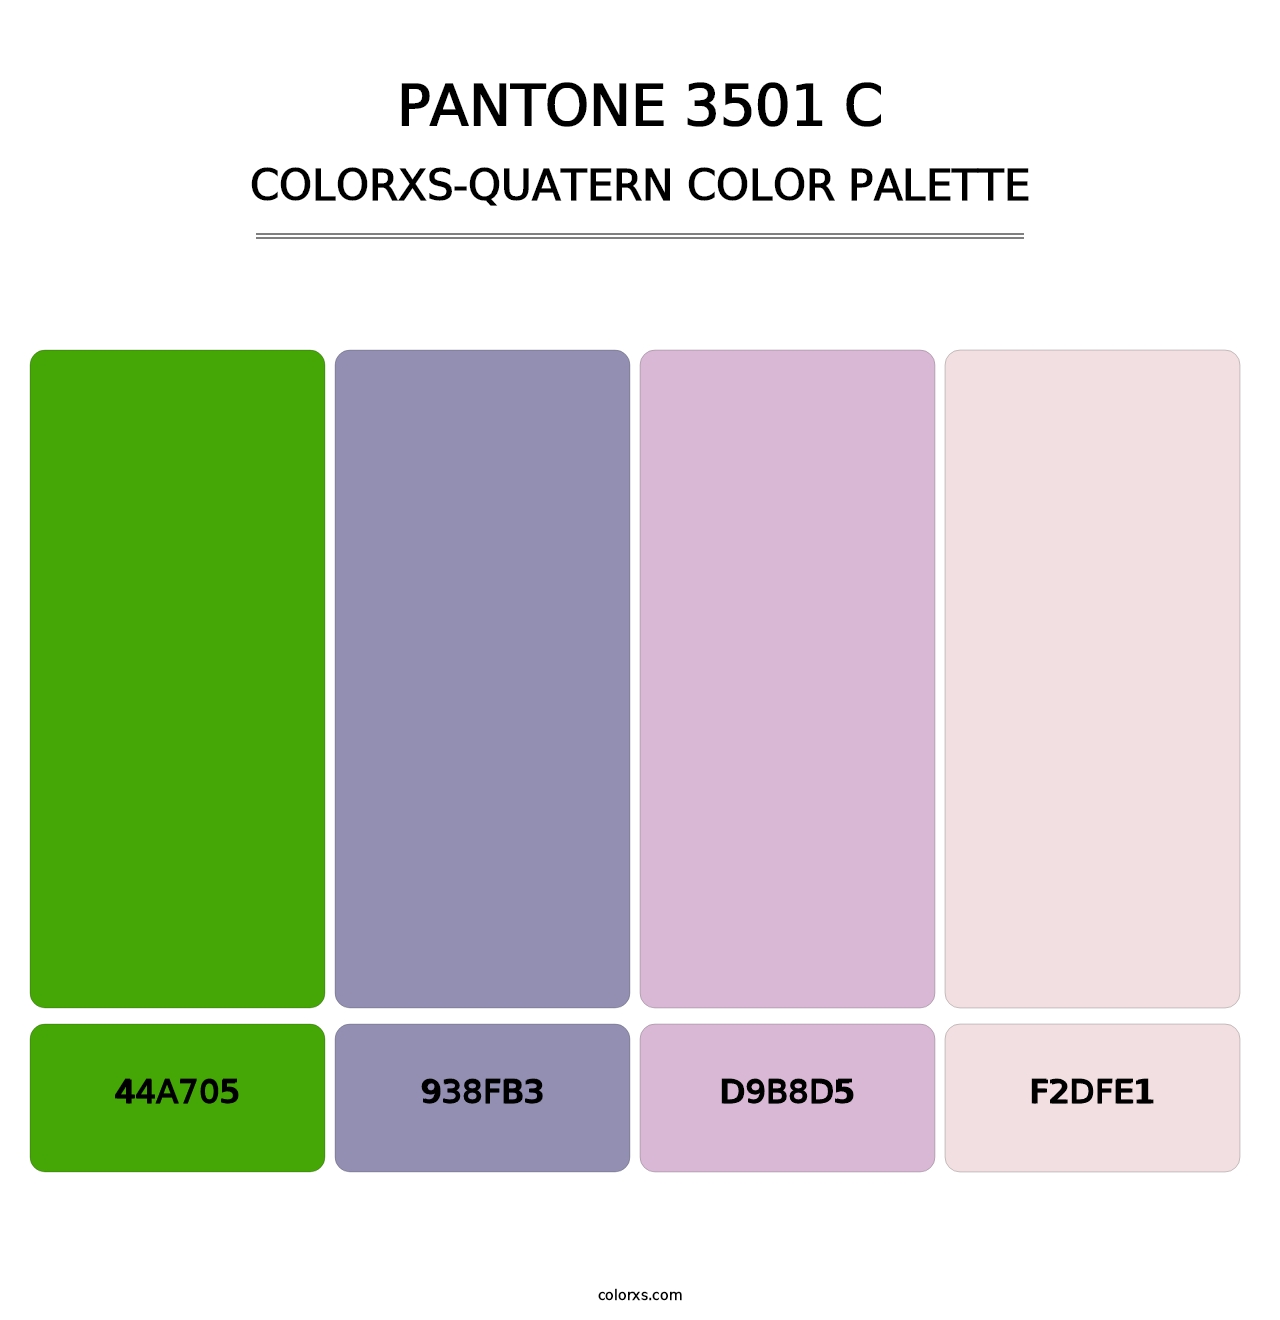 PANTONE 3501 C - Colorxs Quatern Palette